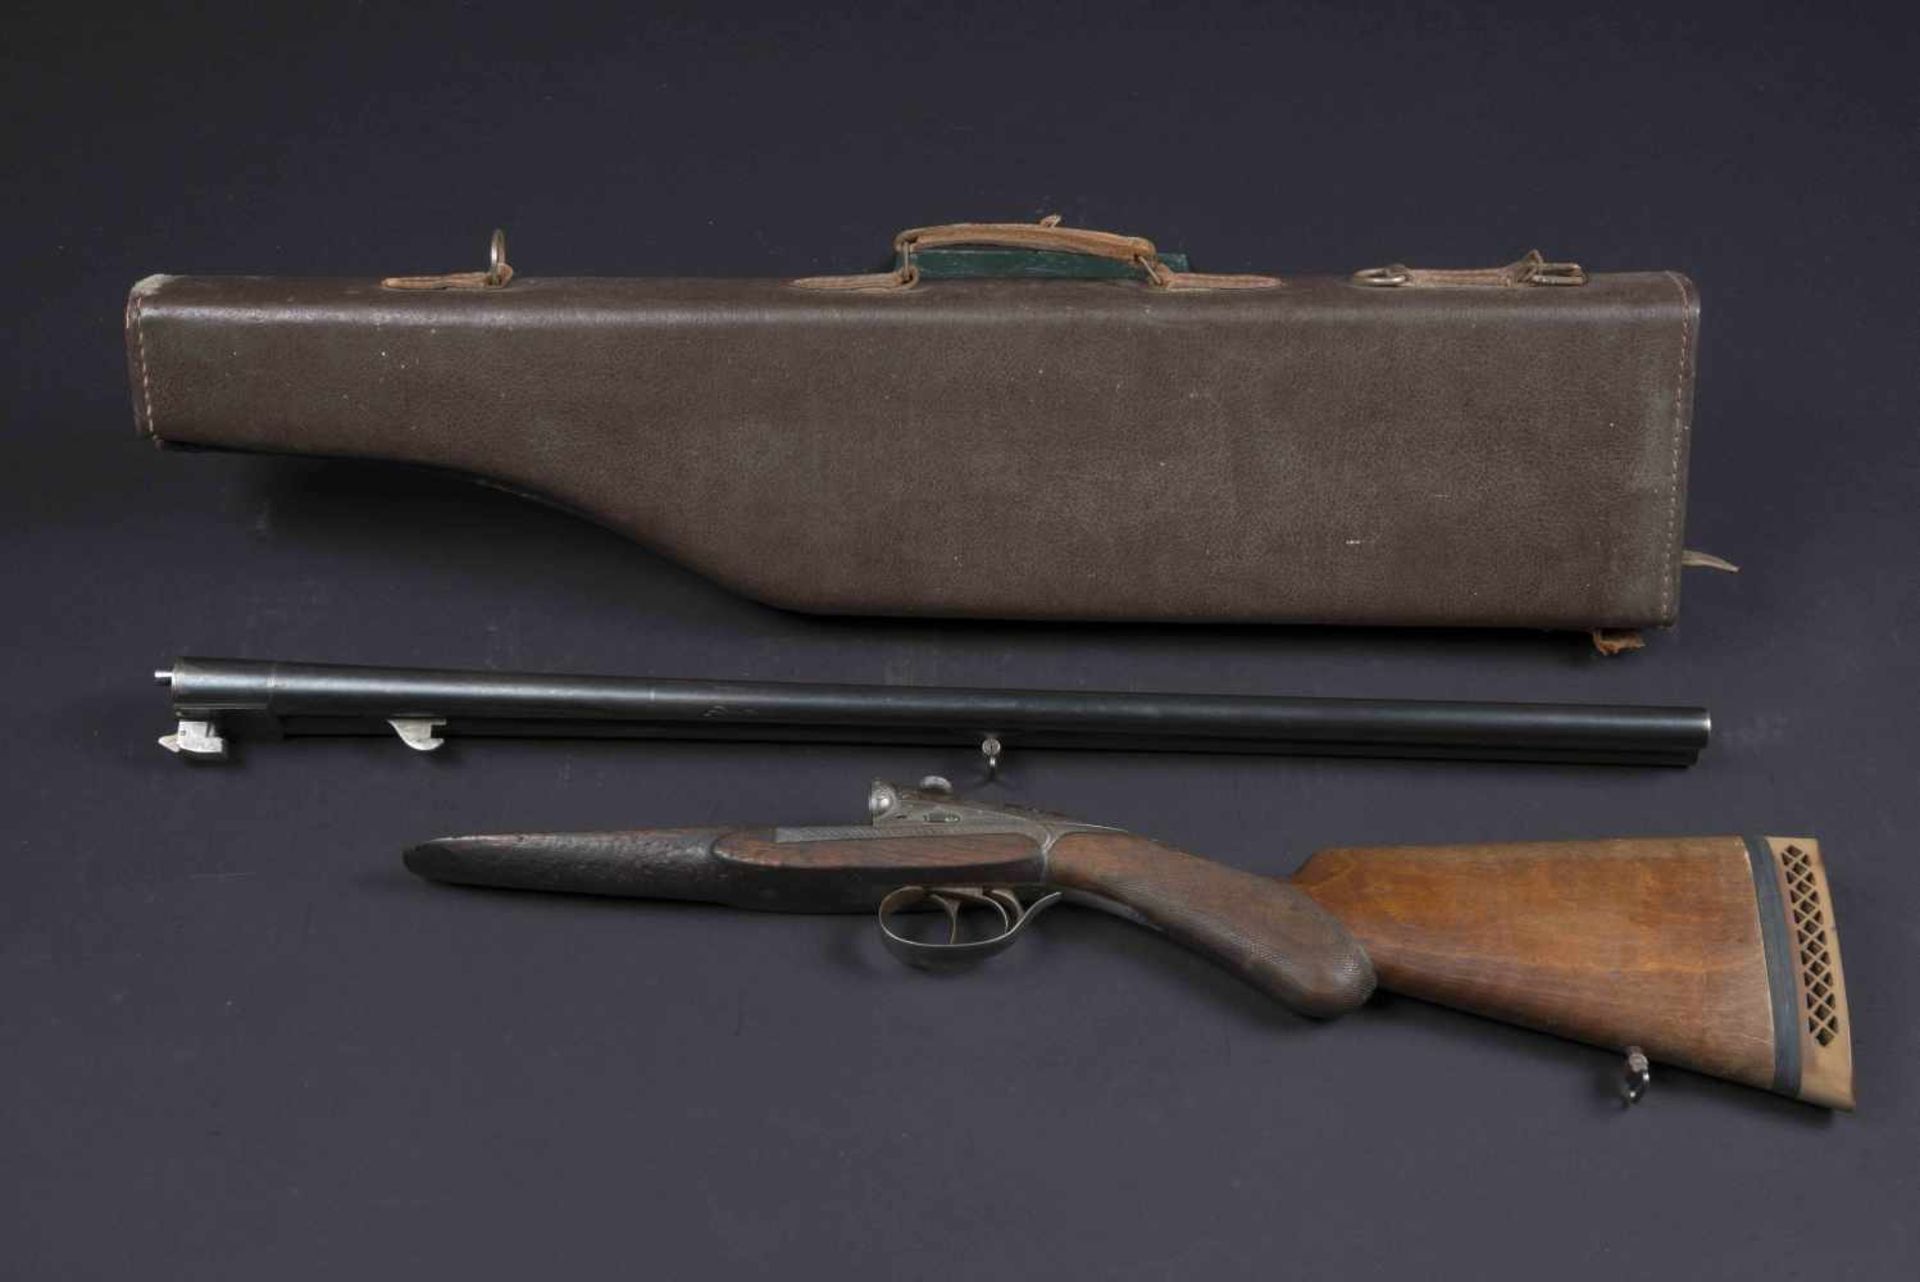 Fusil de chasse Darne Catégorie C Crosse bois, partie métallique ciselée. Canon Darne, plaque de - Image 2 of 4